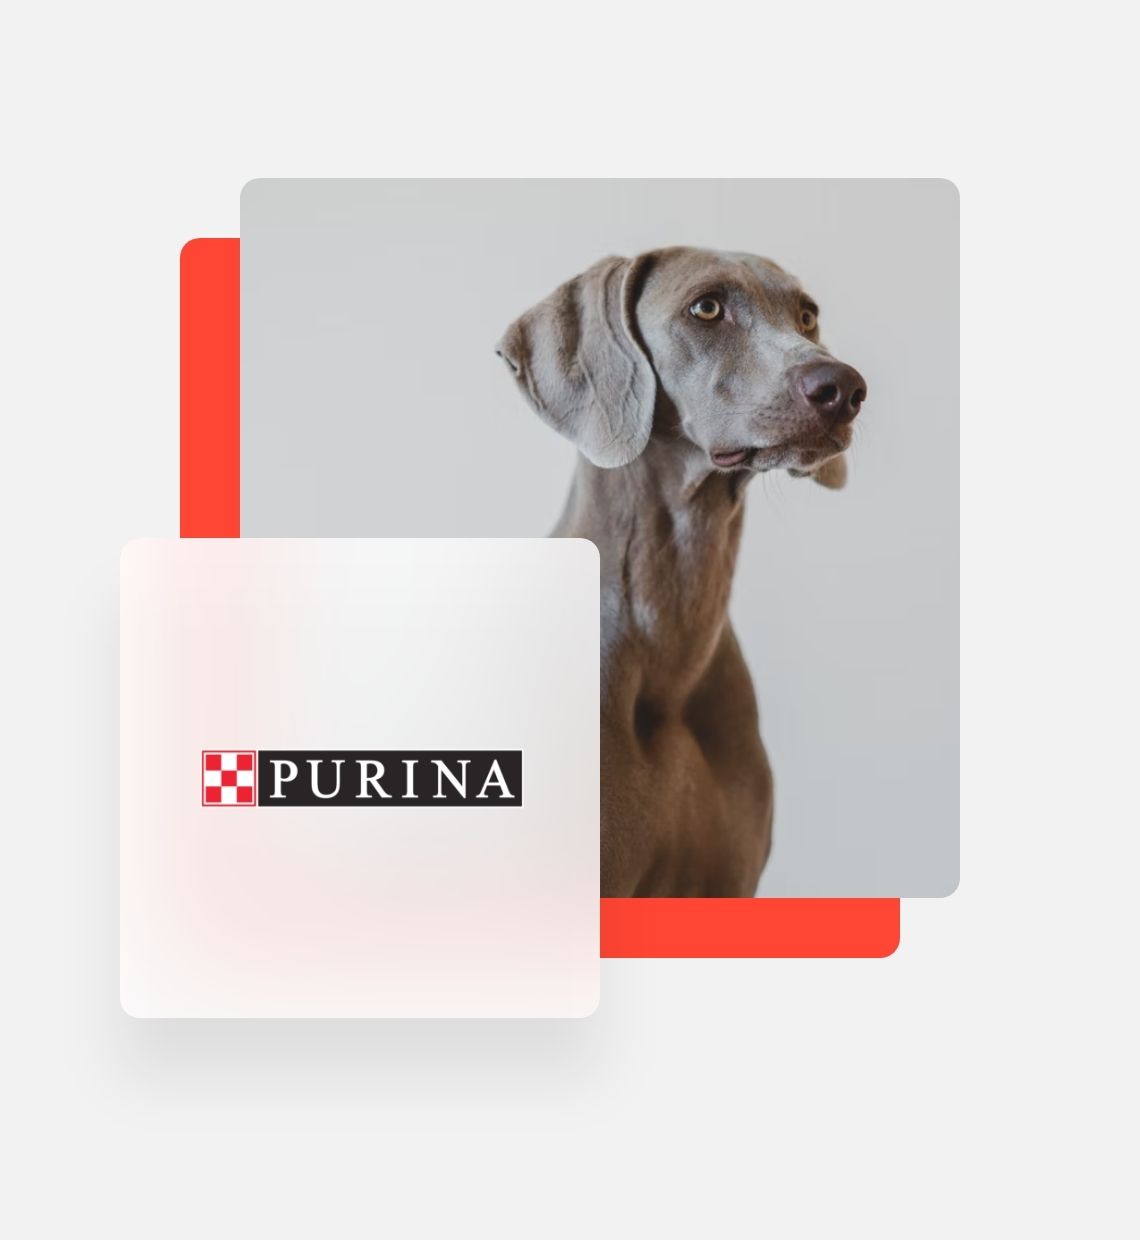 Purina logo with dog